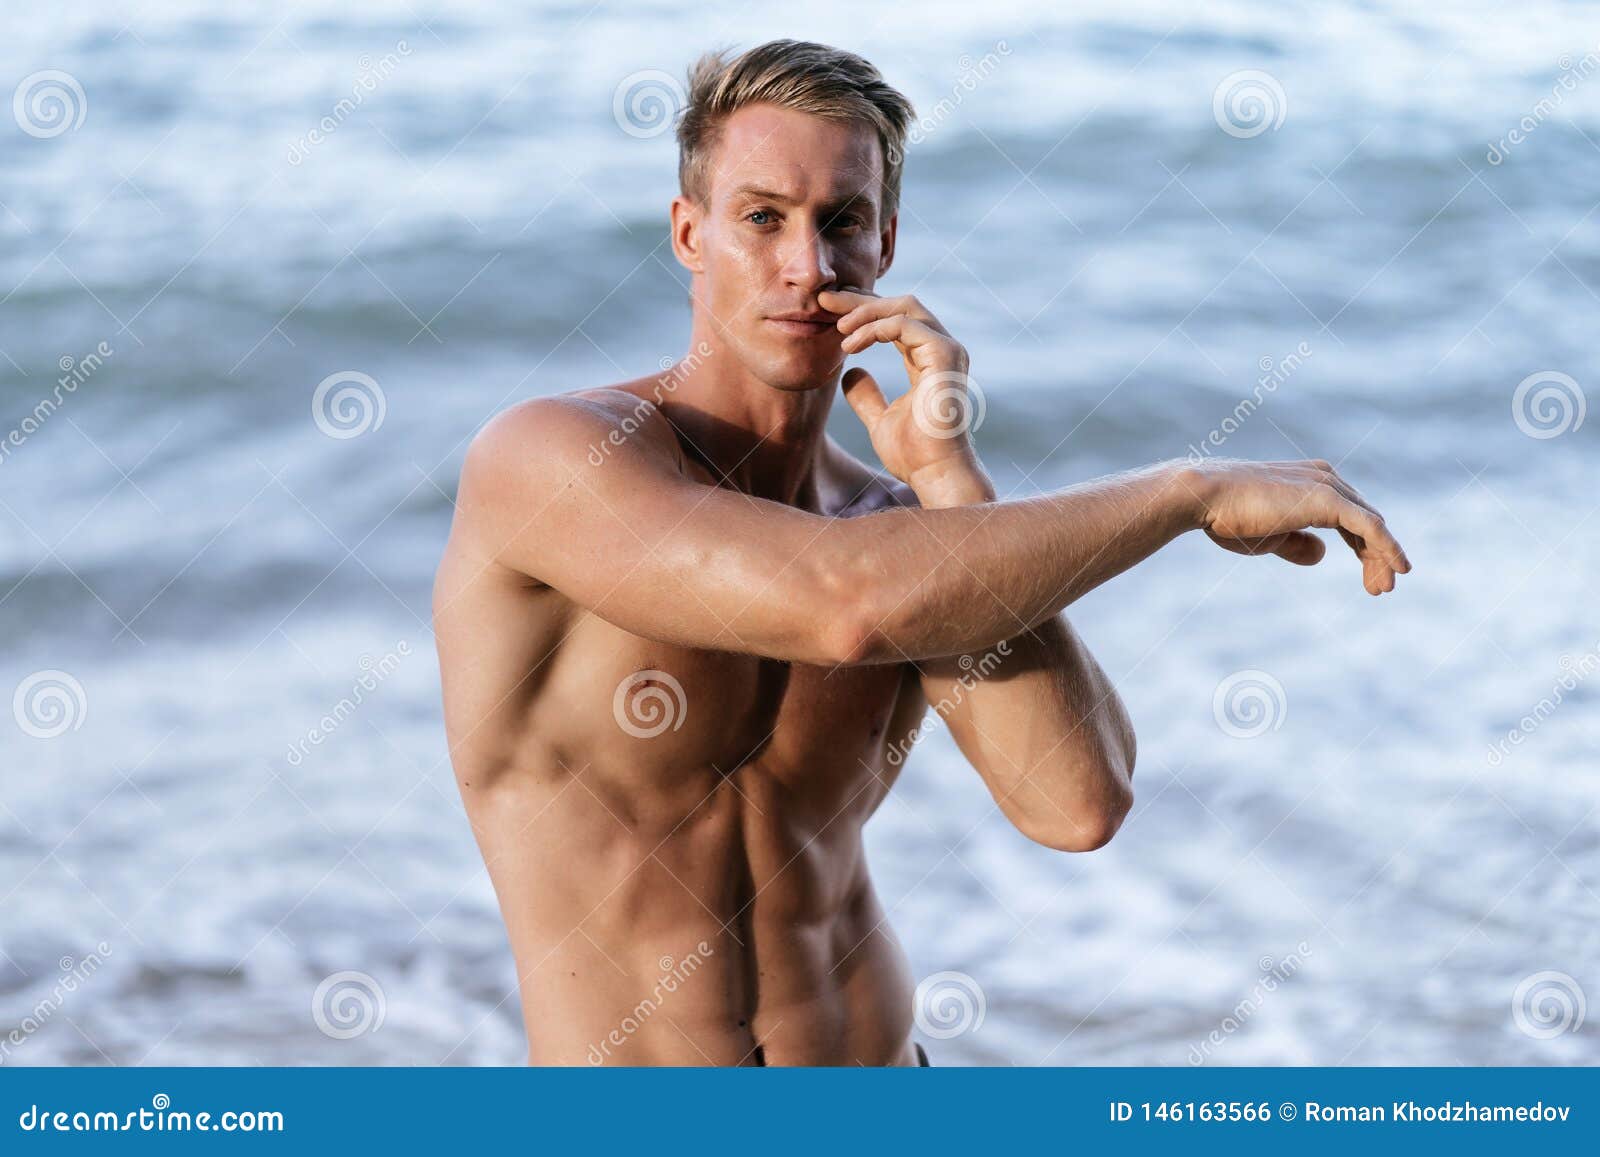 Men Naked At Beach